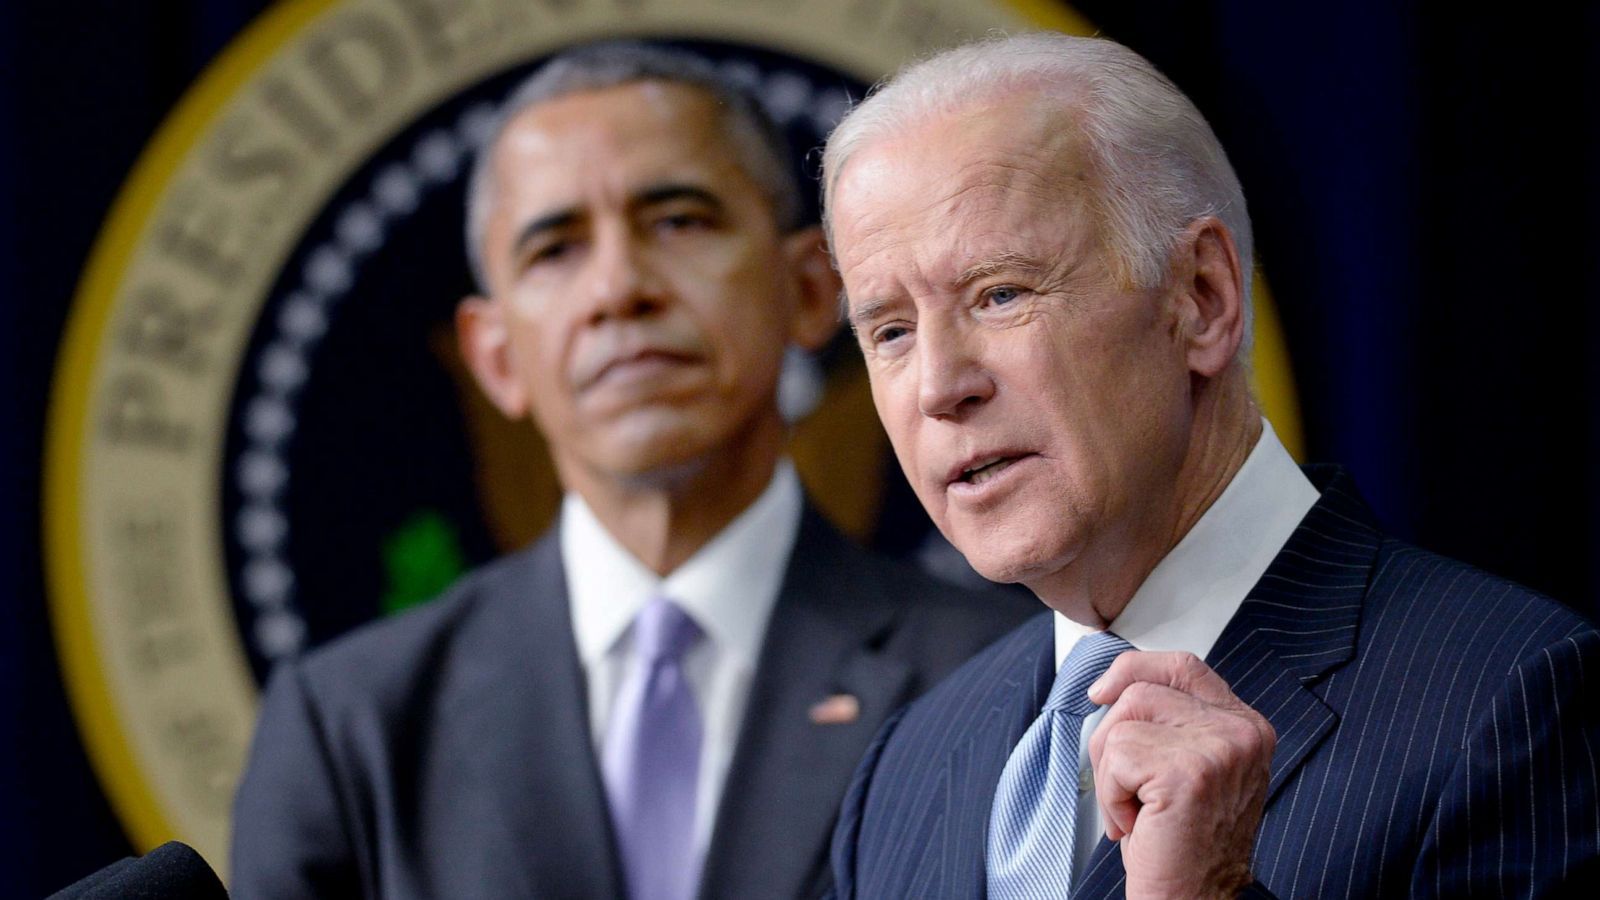 Obama endorses former Vice President Joe Biden for president